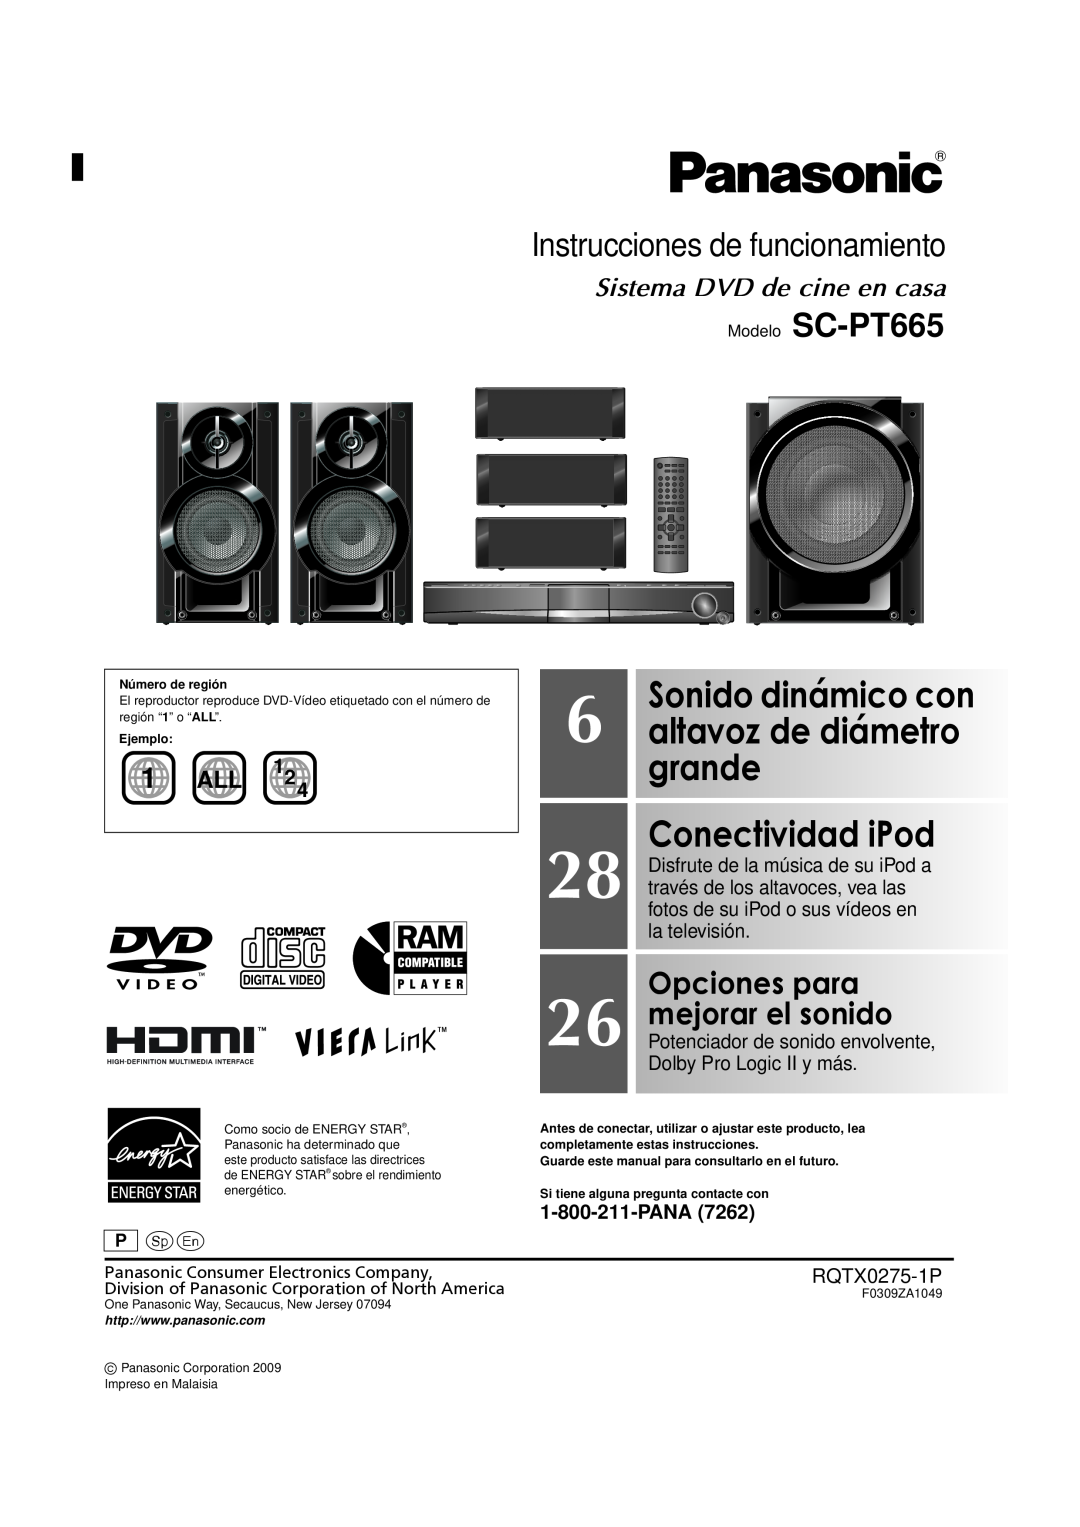 Panasonic manual Instrucciones de funcionamiento, Modelo SC-PT665, Sonido dinámico con, Opciones para, mejorar el sonido 